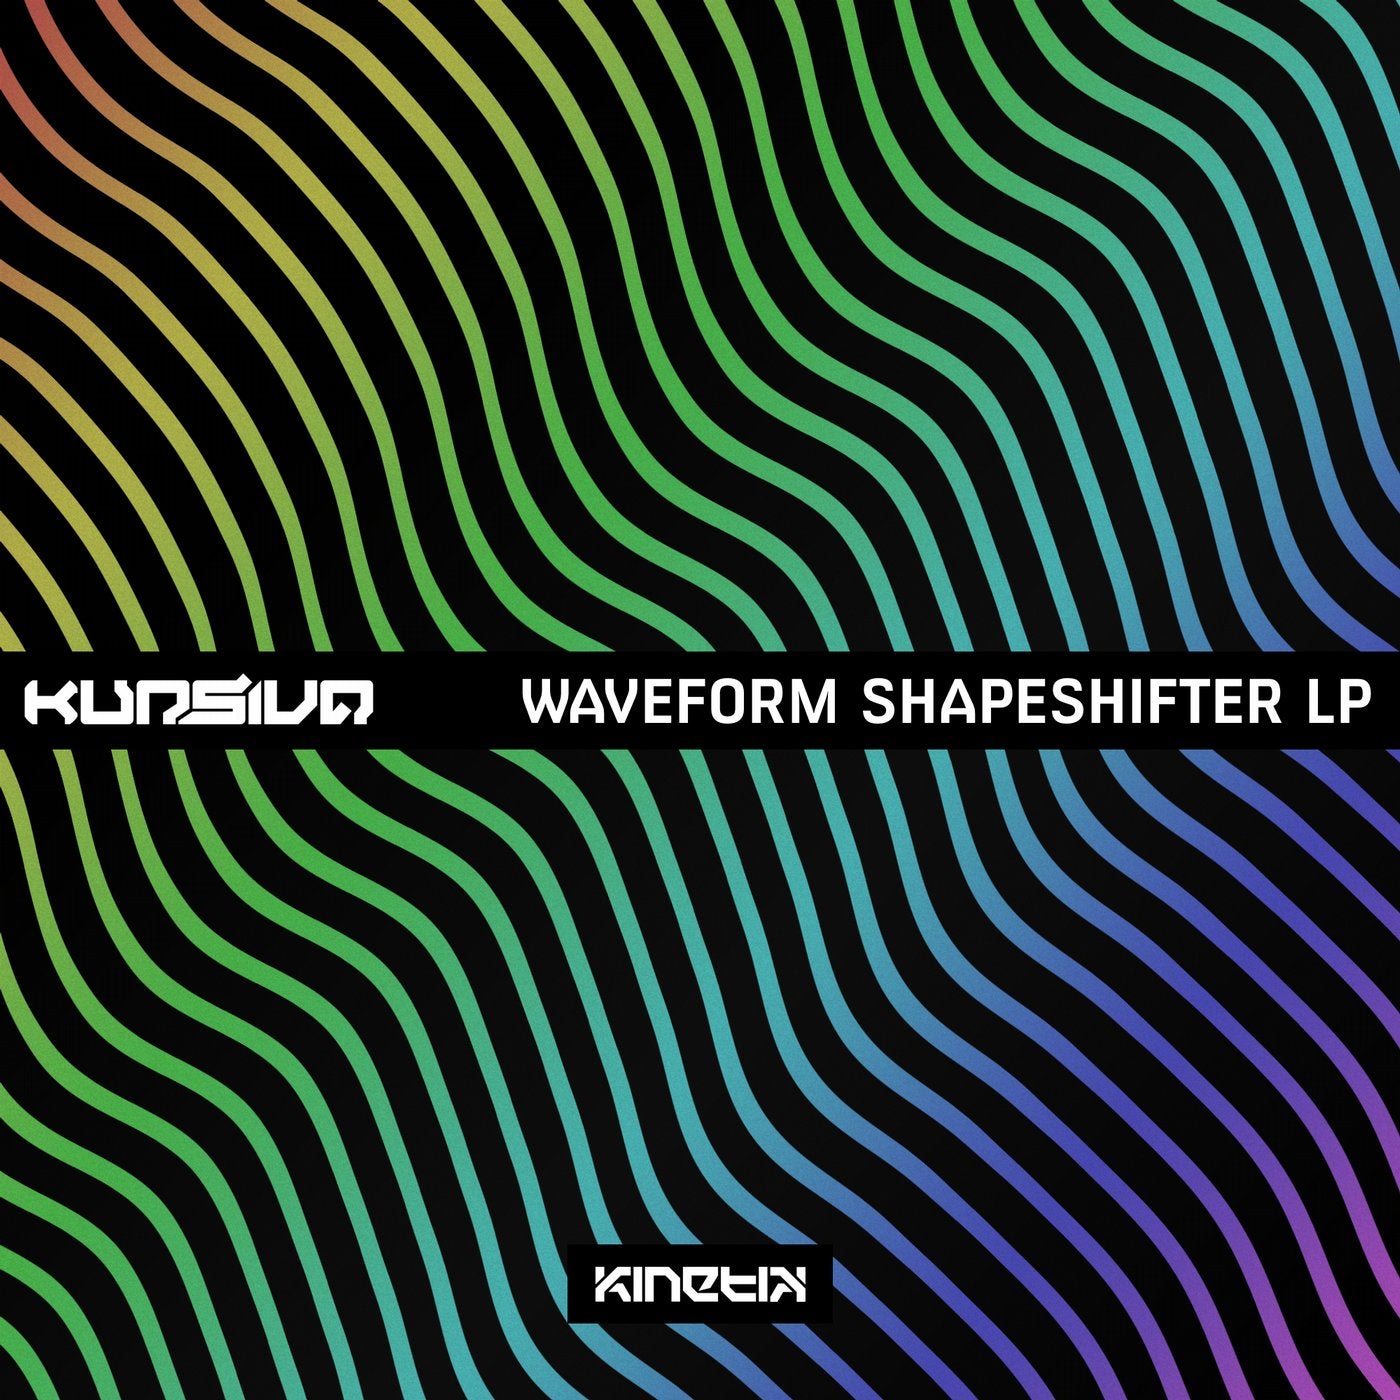 Waveform Shapeshifter LP